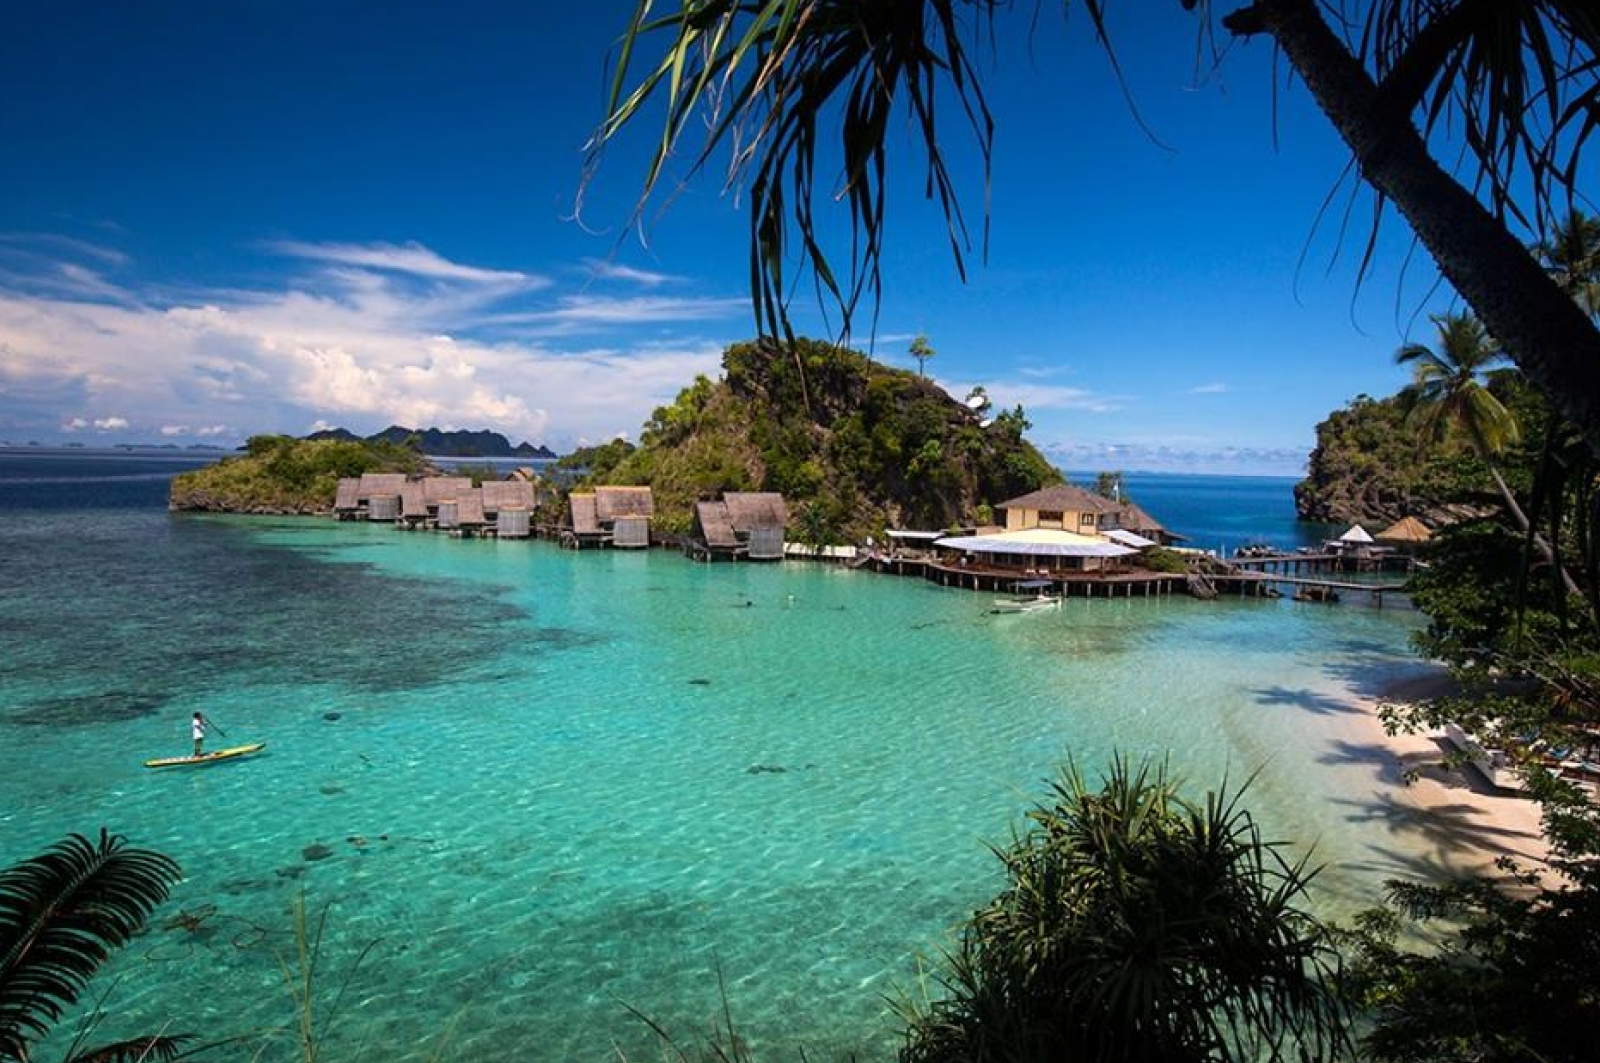  Raja Ampat Islands  Indonesia Gokayu Your Travel Guide